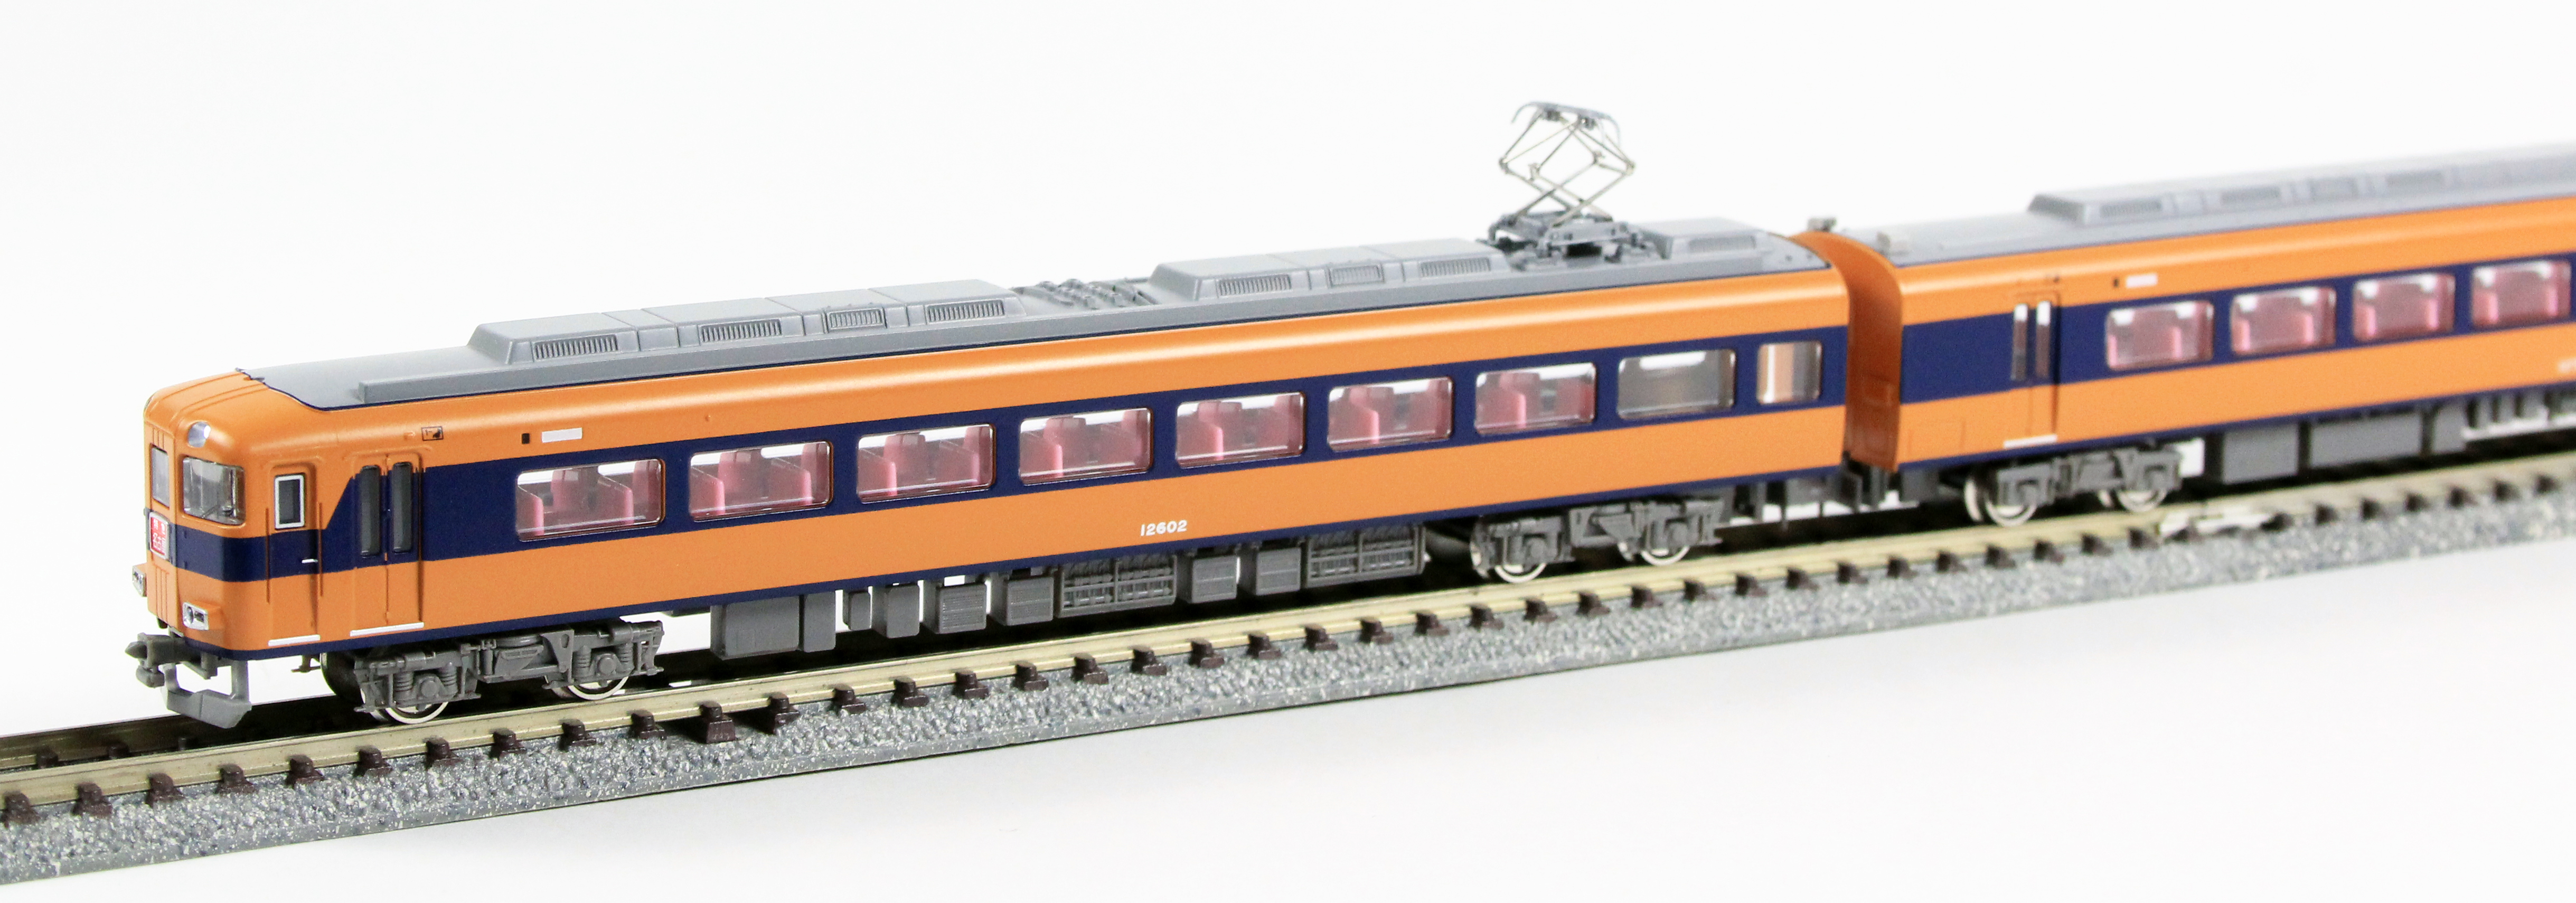 グリーンマックス 30710 近鉄12600系 旧塗装 増結4両セット鉄道模型 Ｎ 